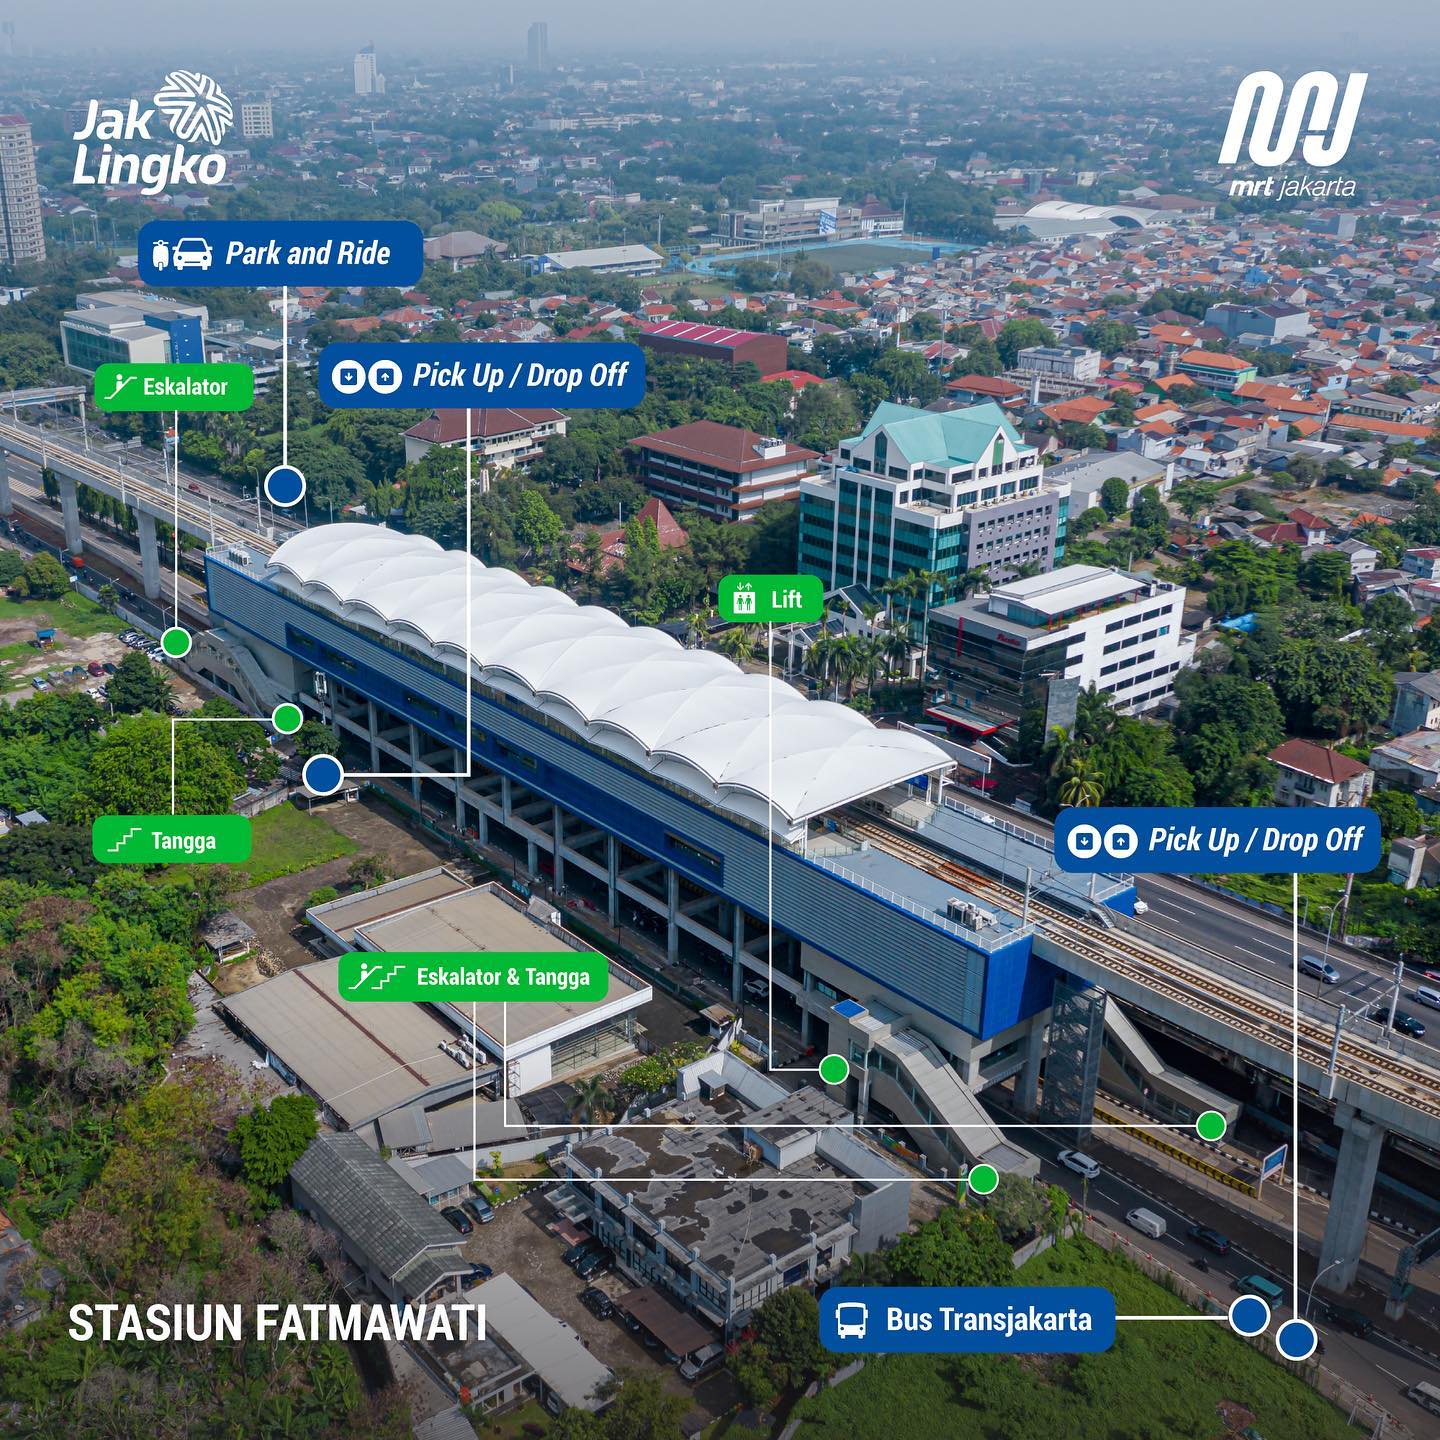     Lokasi fasilitas integrasi moda transportasi publik lainnya di Stasiun Fatmawati.